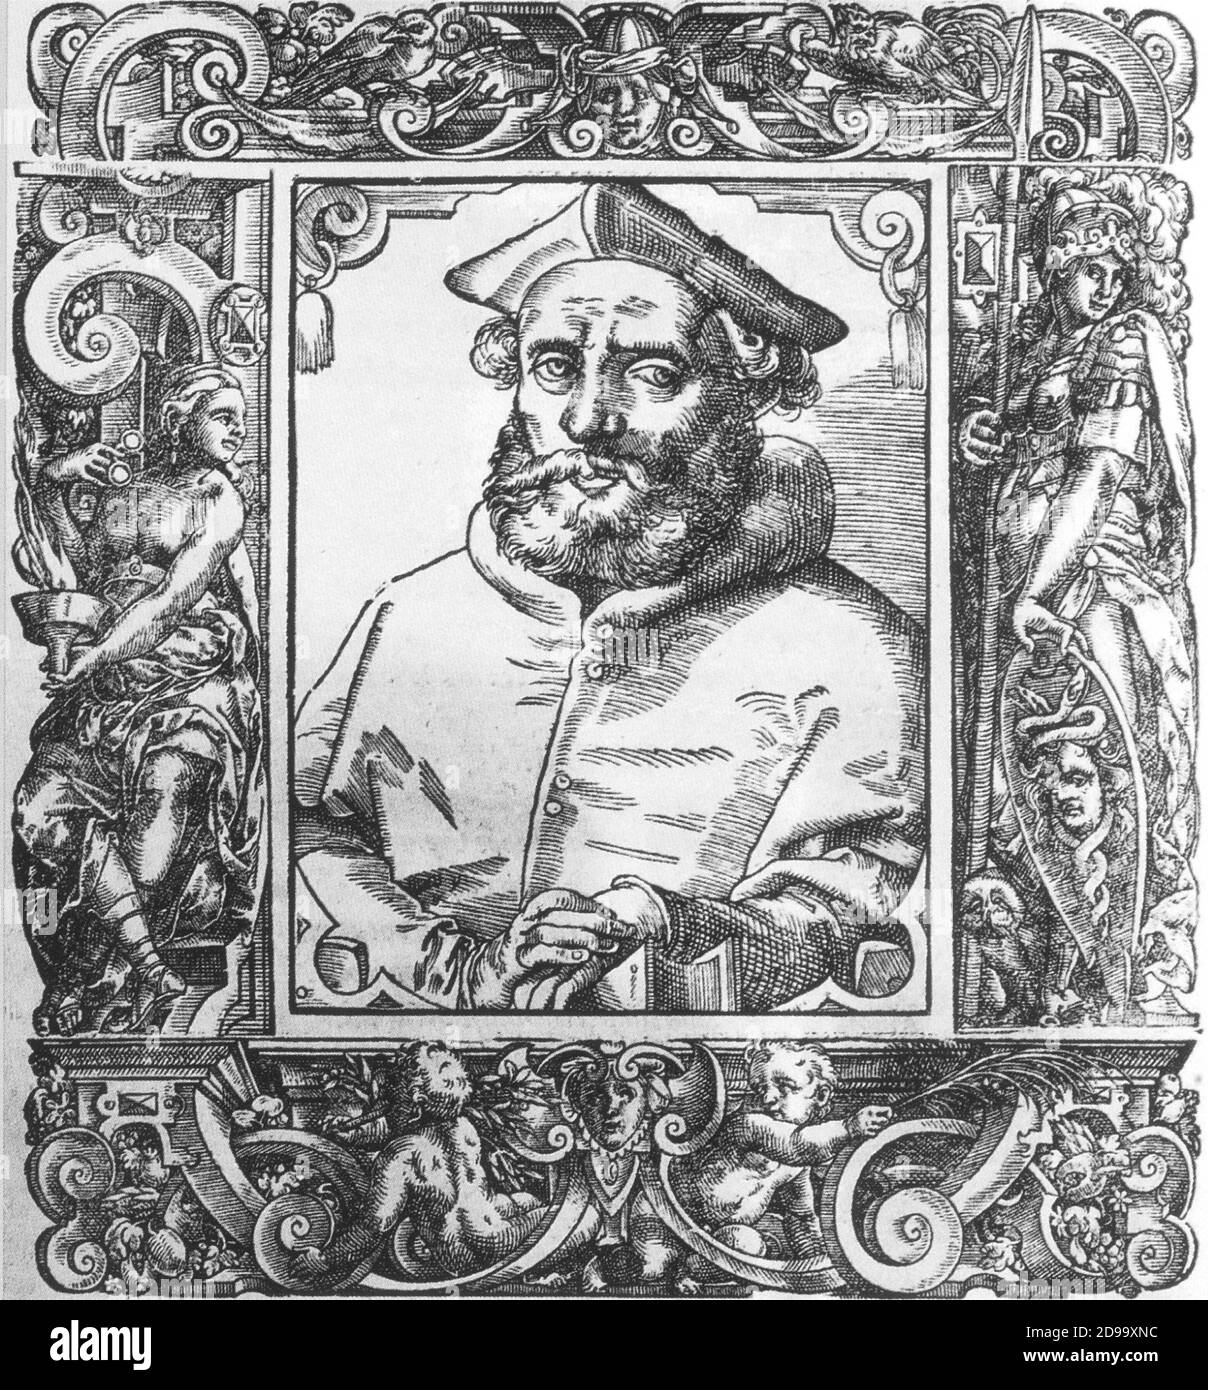 Le Cardinal GASPARE CONTARINI ( 1575 , portrait xilography by P. Giovio ' Elogia Vicorum Bellica Virtute Ilustrium ' , 1596 ) , Auteur de ' Consilium de emendanda ecclesia ' - CONCILIO DI TRENTO - Cardinale - alto prelato - VATICANO - VATICAN - RELIGIONE - RELIGION - barba - barbe - ritrato - portrait - TRENT COUNCIL - CONTRORIFORMA - CONTRE-RÉFORME - contre-réforme - chapeau --- Archivio GBB Banque D'Images